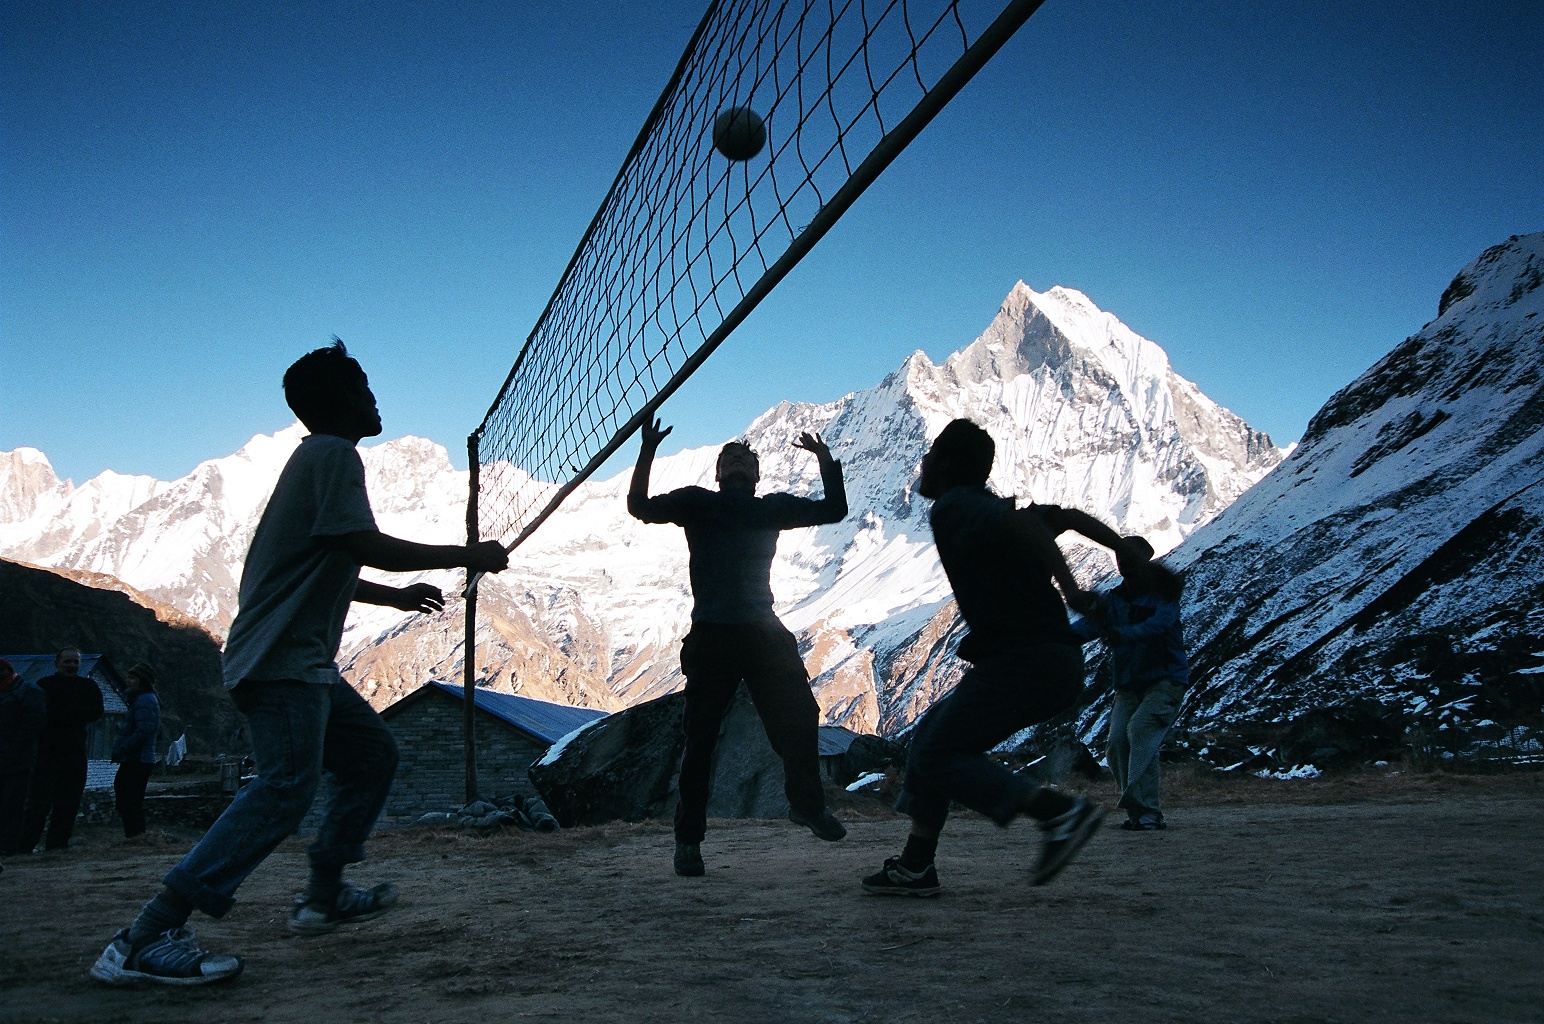 Volejbal v základním táboře pod Annapurnou, Nepál